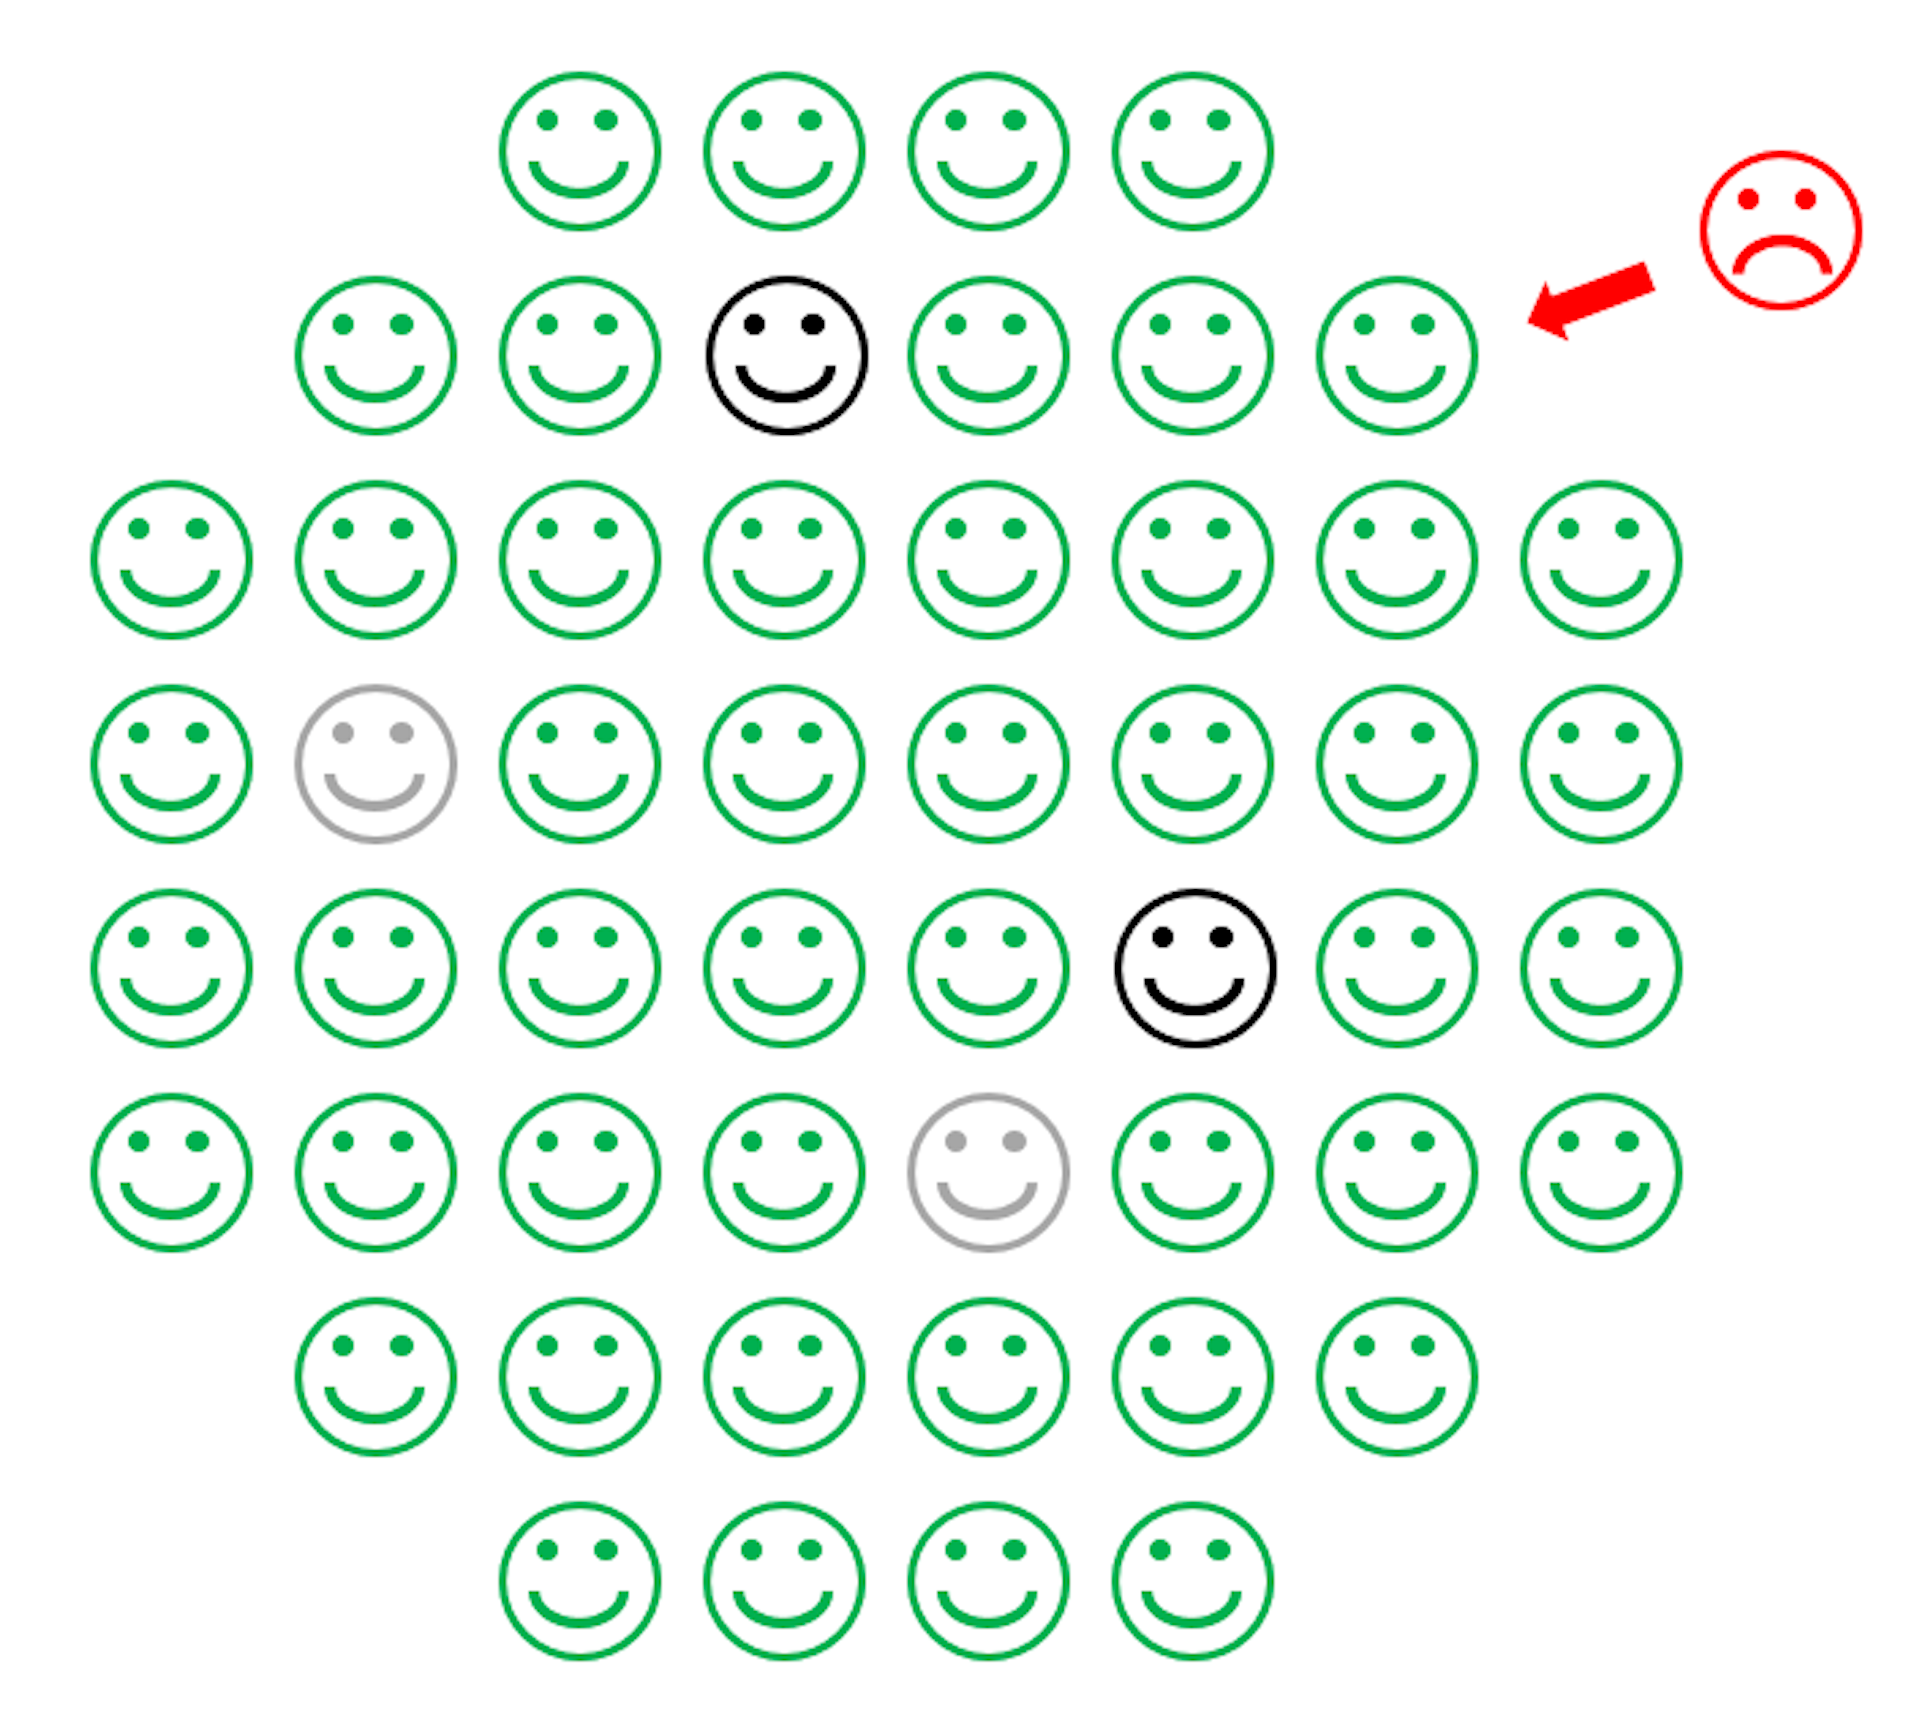 Eine Zeichnung, die einen Kreis aus grünen glücklichen Gesichtern mit einigen blauen glücklichen Gesichtern in der Mitte und einem roten stirnrunzelnden Gesicht zeigt, das die blauen Gesichter nicht erreichen kann.